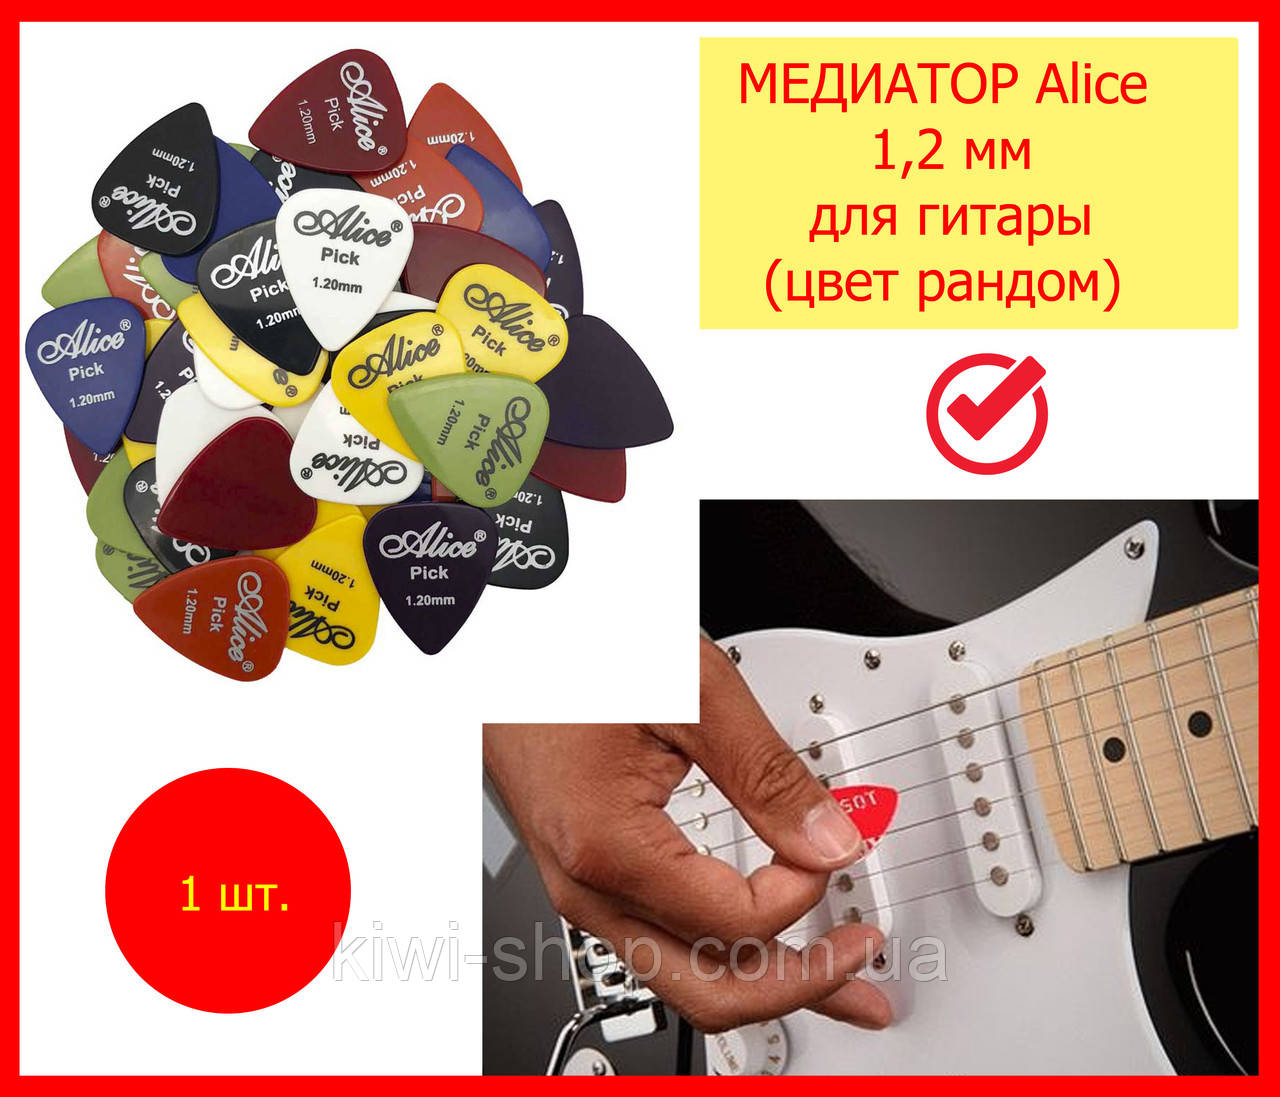 Медіатор для гітари Alice 1,2 мм нейлон (різні кольори), медіатор товщини 1,2 мм на гітару акустичну електрострум